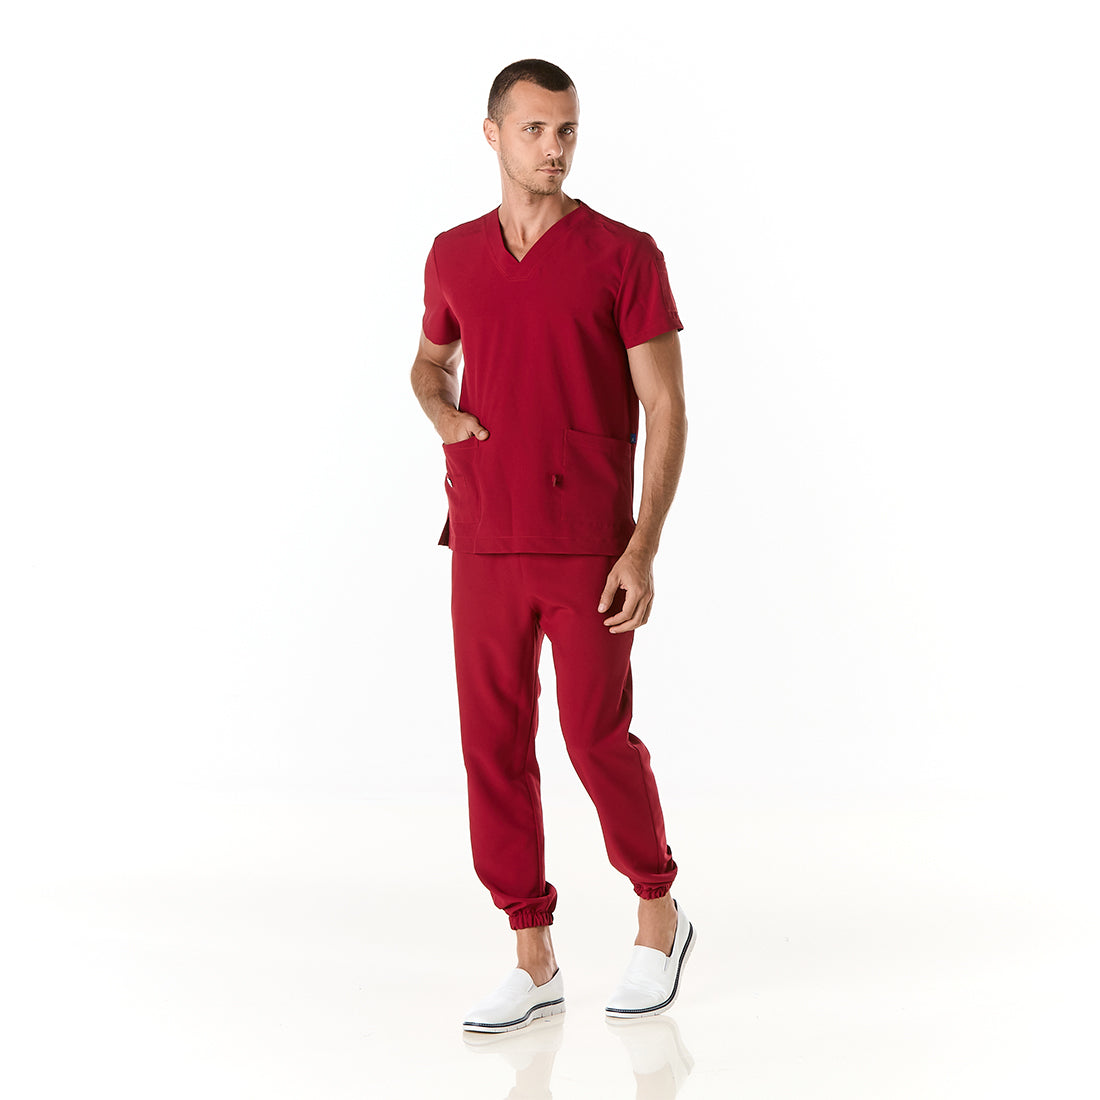 Hombre vistiendo pijama sanitario color vino con cuello en v y pantalon tipo jogger